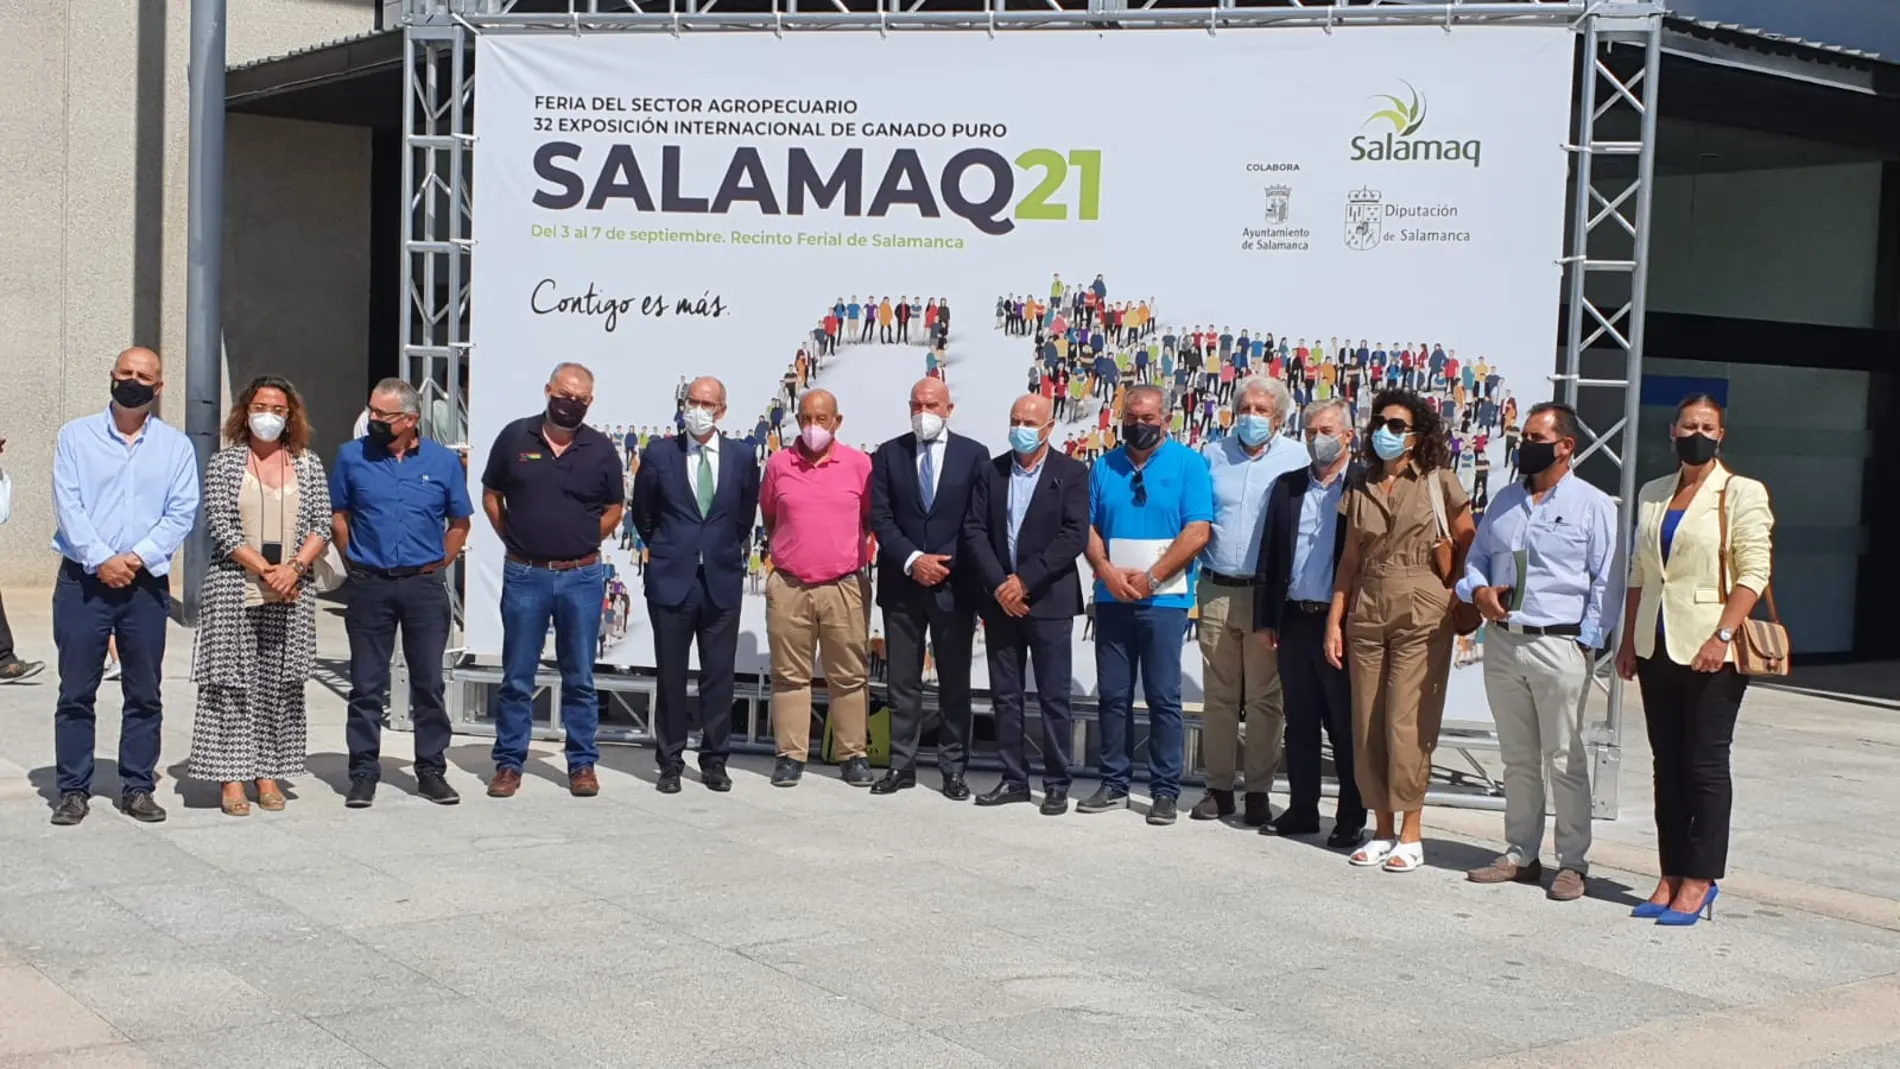 Celebración del Consejo Agrario de Castilla y León en Salamaq2021 presidido por Jesús Julio Carnero